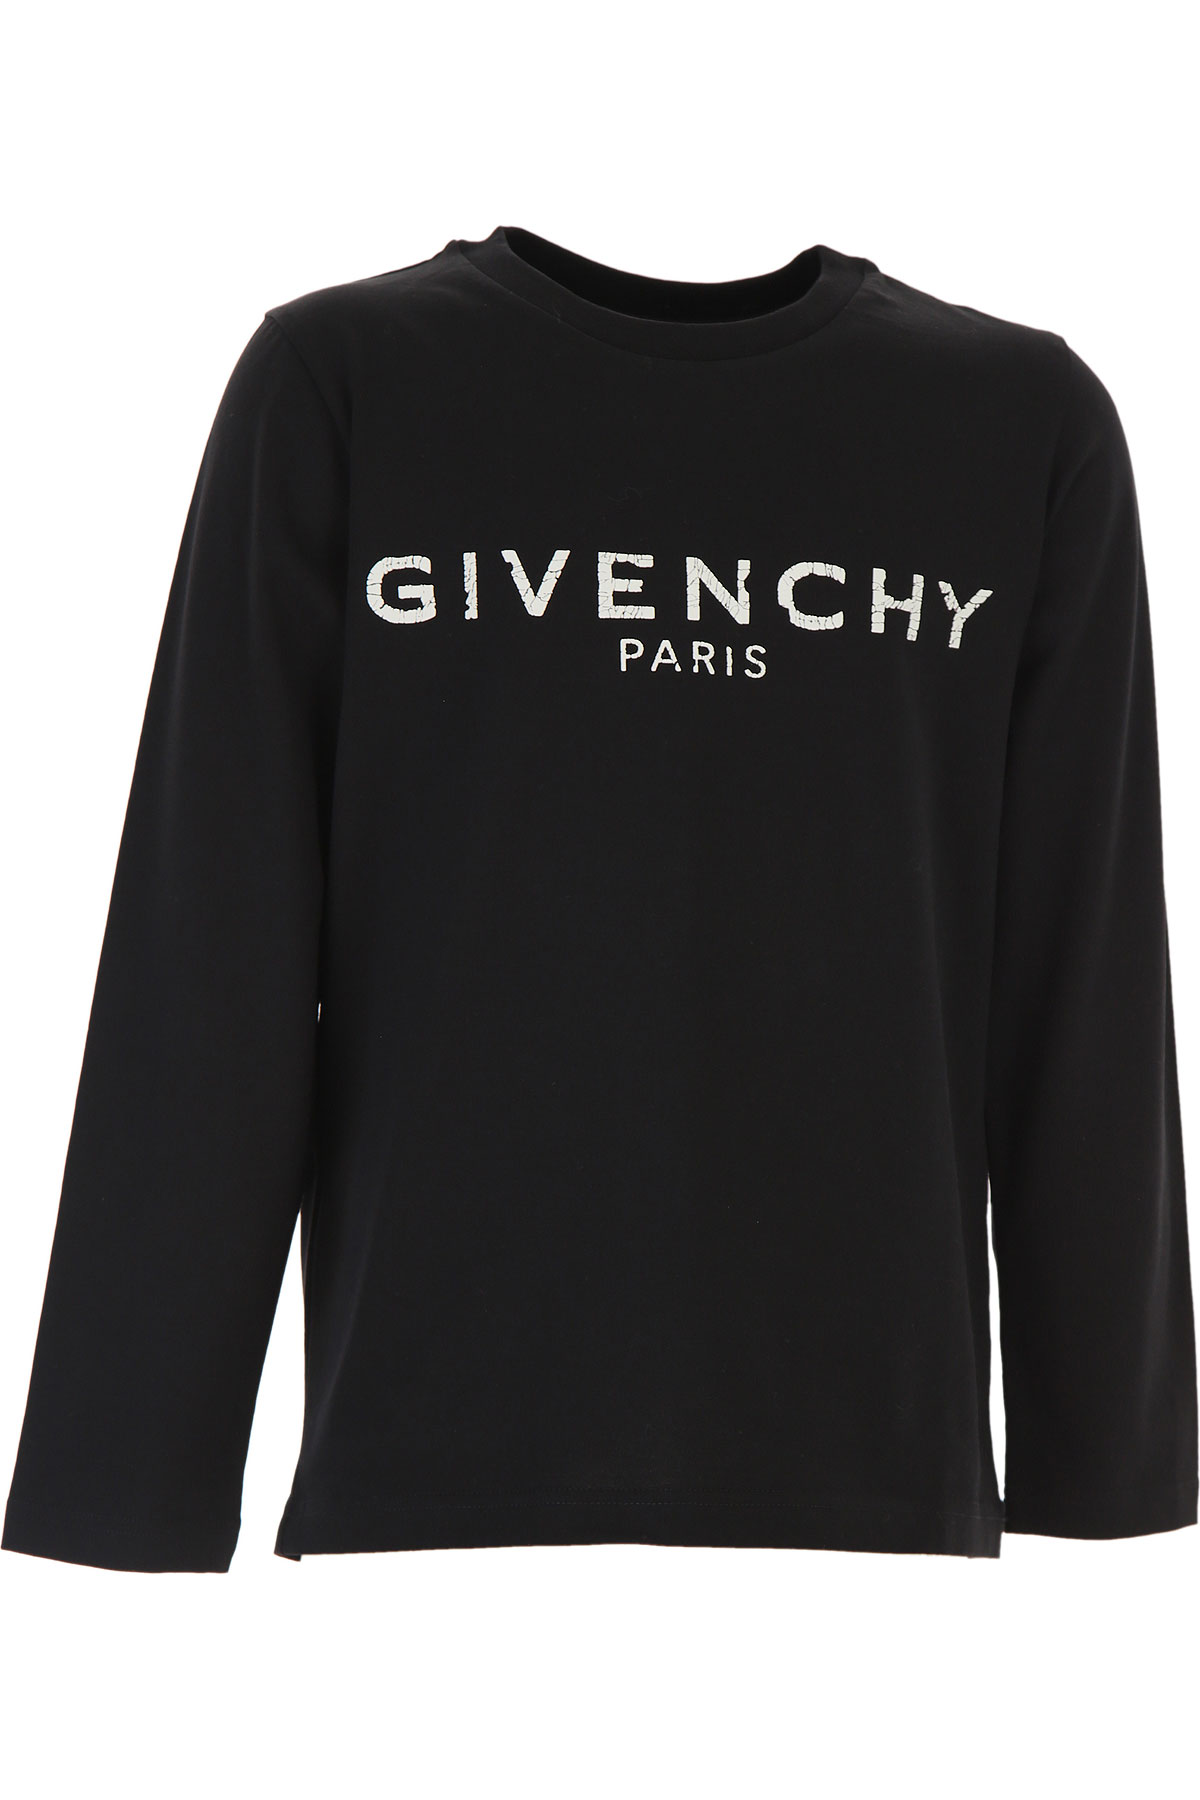 Givenchy Kinder T-Shirt für Jungen Günstig im Sale, Schwarz, Baumwolle, 2017, 10Y 12Y 4Y 8Y